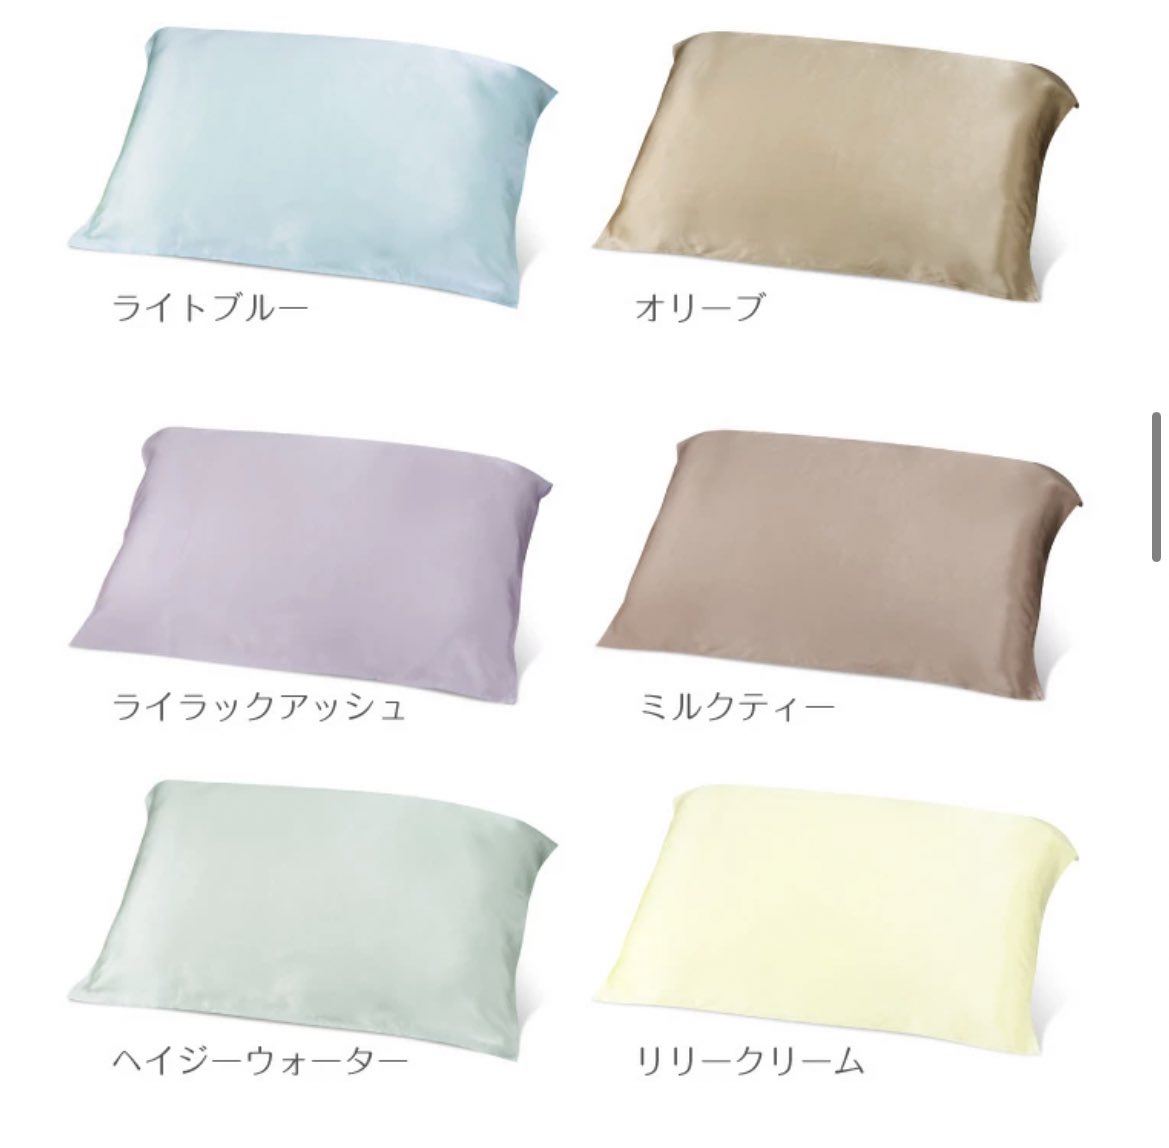 シルクの枕カバーは本当におすすめ!肌荒れ予防、寝ぐせ防止できて低価格!